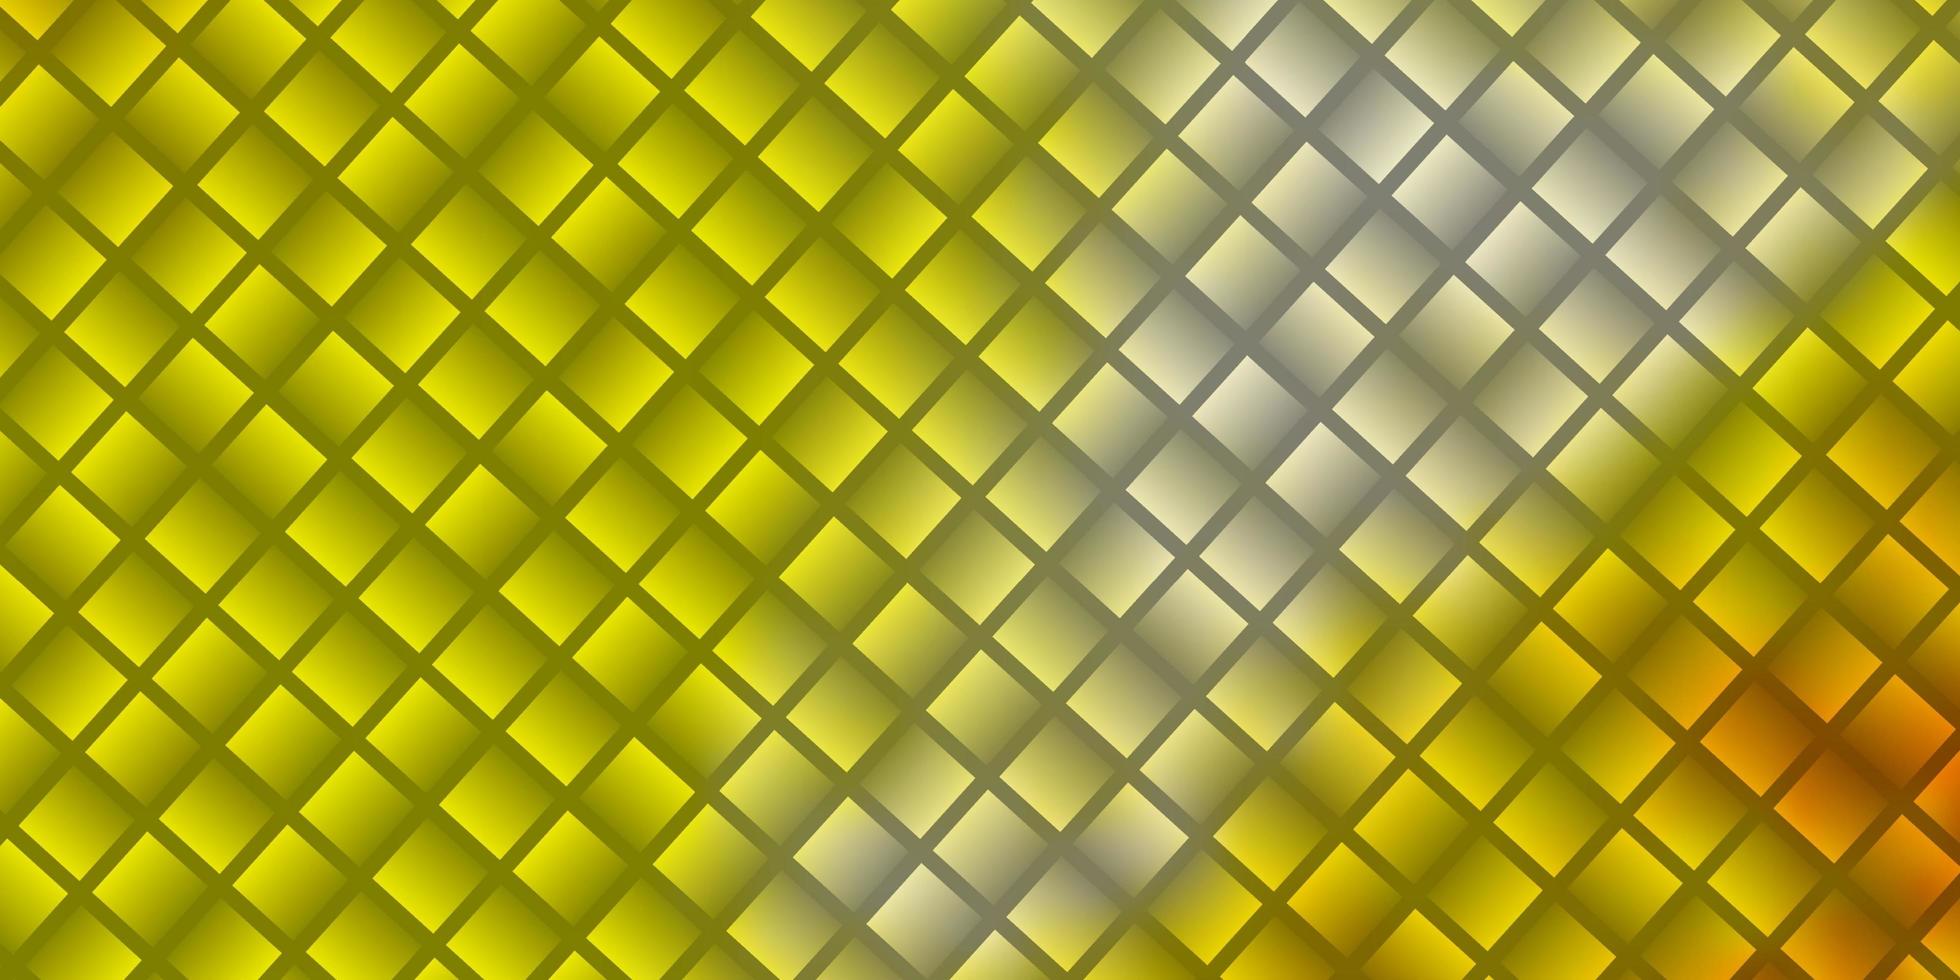 toile de fond de vecteur jaune foncé avec des rectangles.